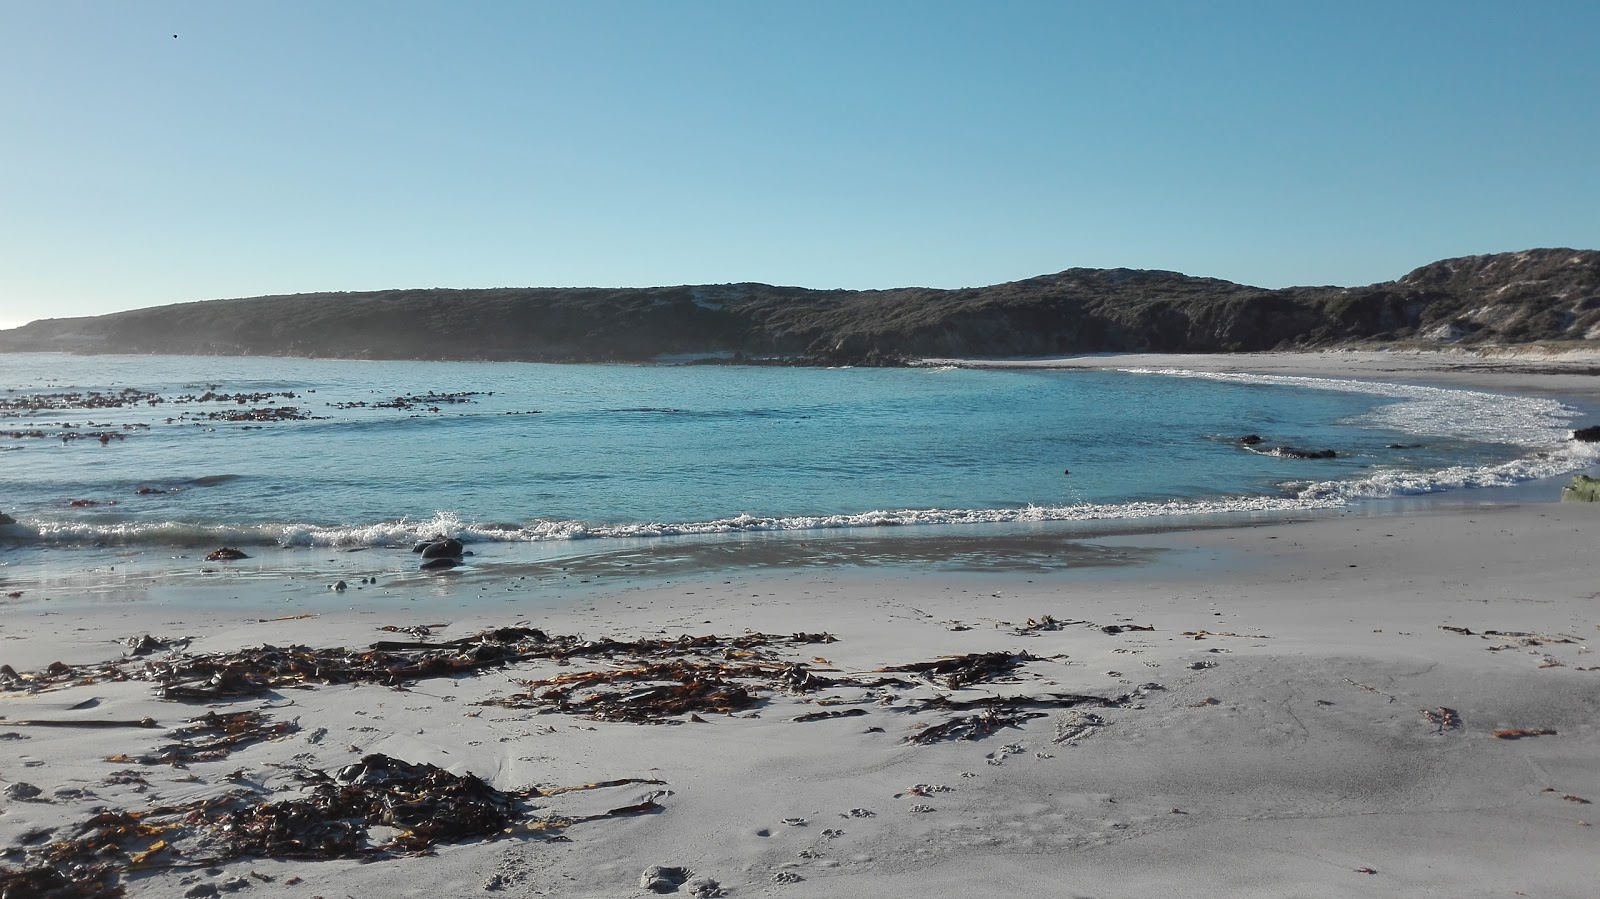 Yzerfontein beach II'in fotoğrafı parlak kum yüzey ile